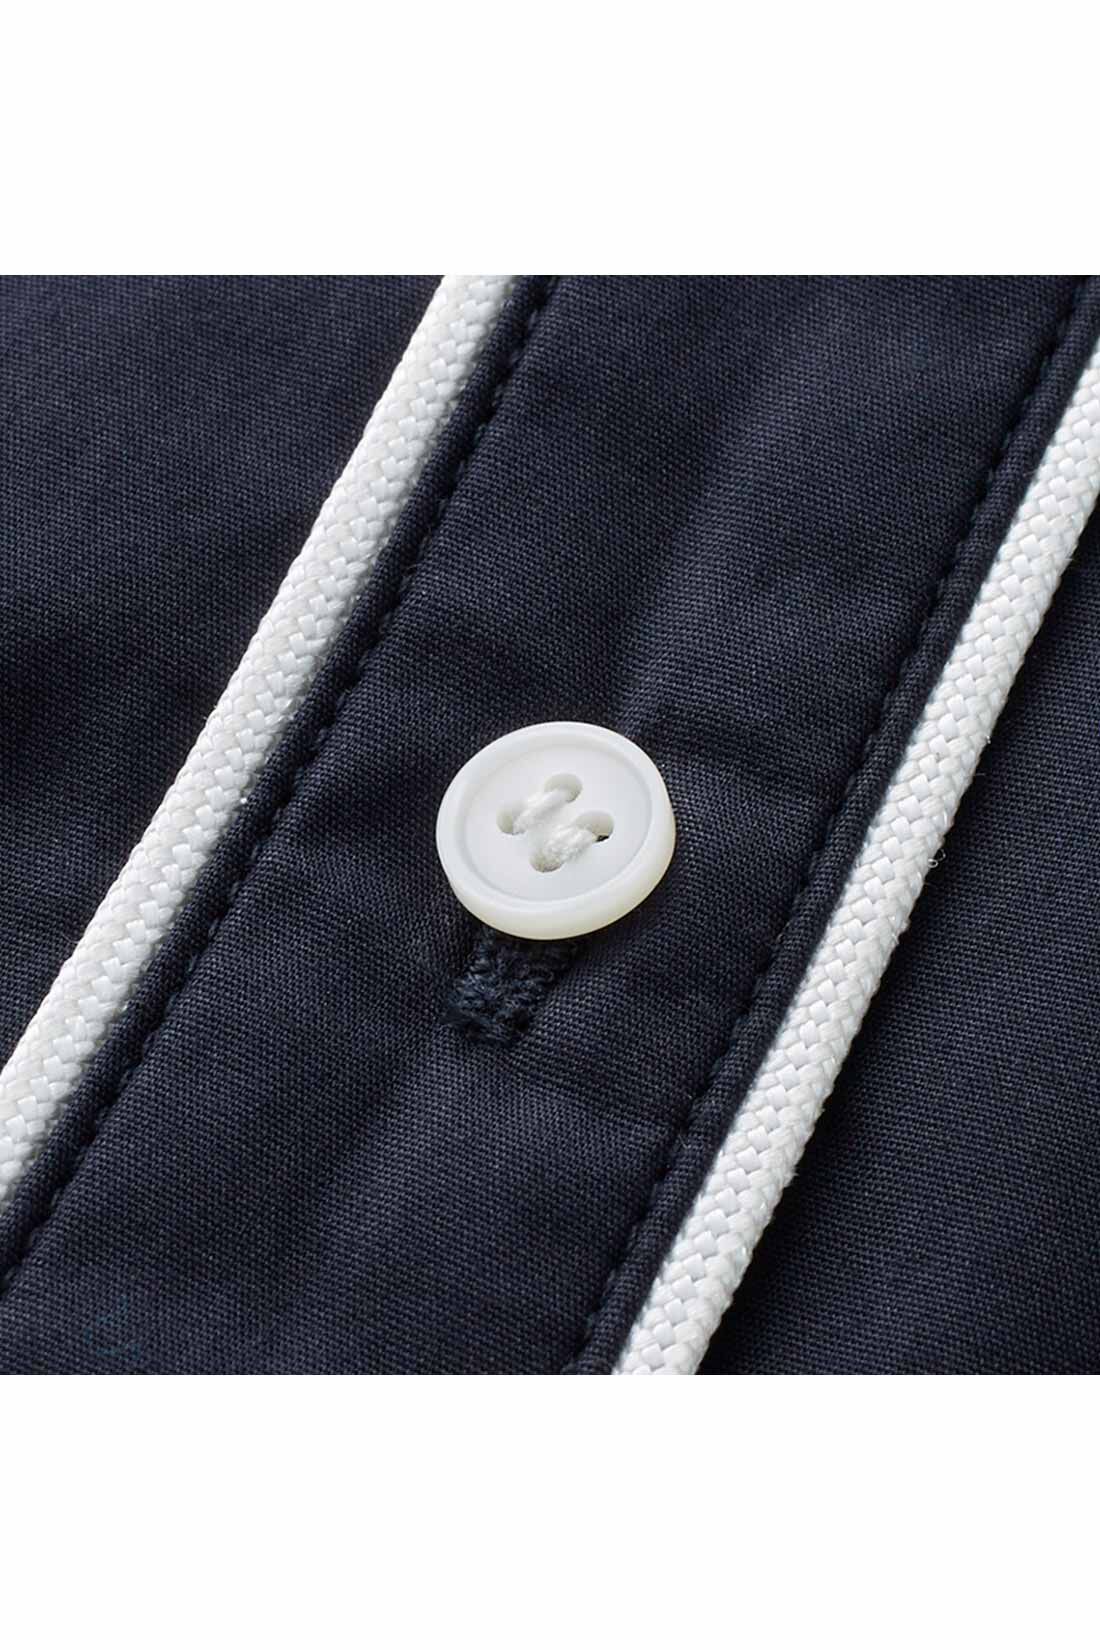 IEDIT|IEDIT[イディット]　コーデのポイントになる きれいめパイピングシャツ〈ベージュ〉|白いパイピングテープとボタンが、清潔感＆華やかなアクセントに。